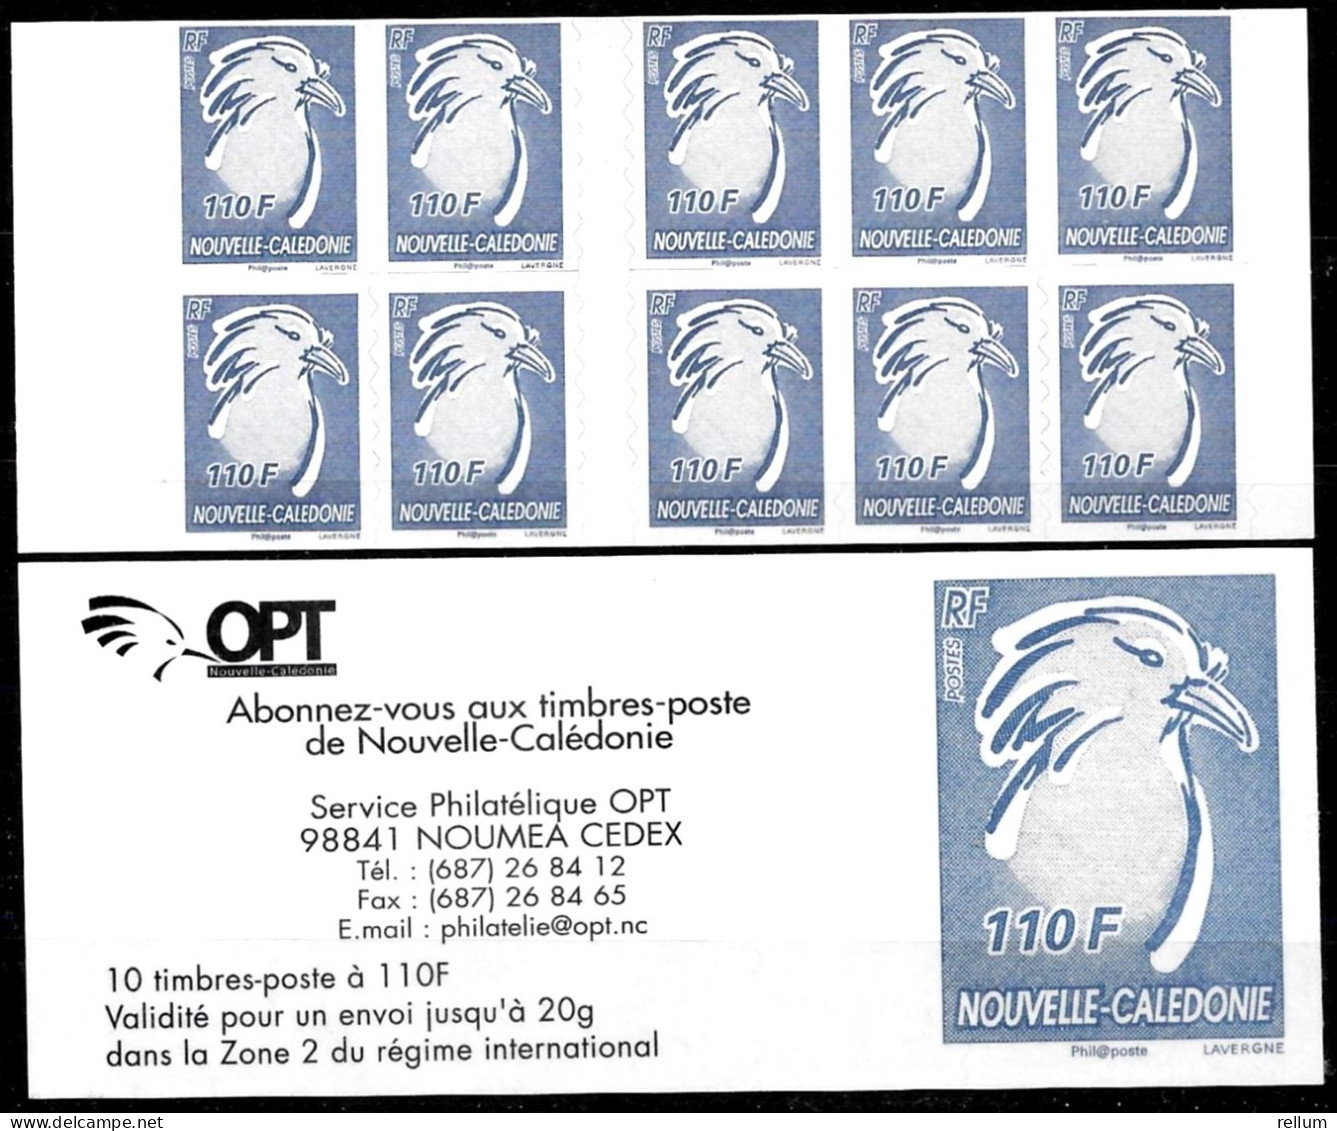 Nouvelle Calédonie 2006 Carnet - Yvert Et Tellier Nr. Carnet C976 - Michel Nr. MH 1391 ** - Neufs